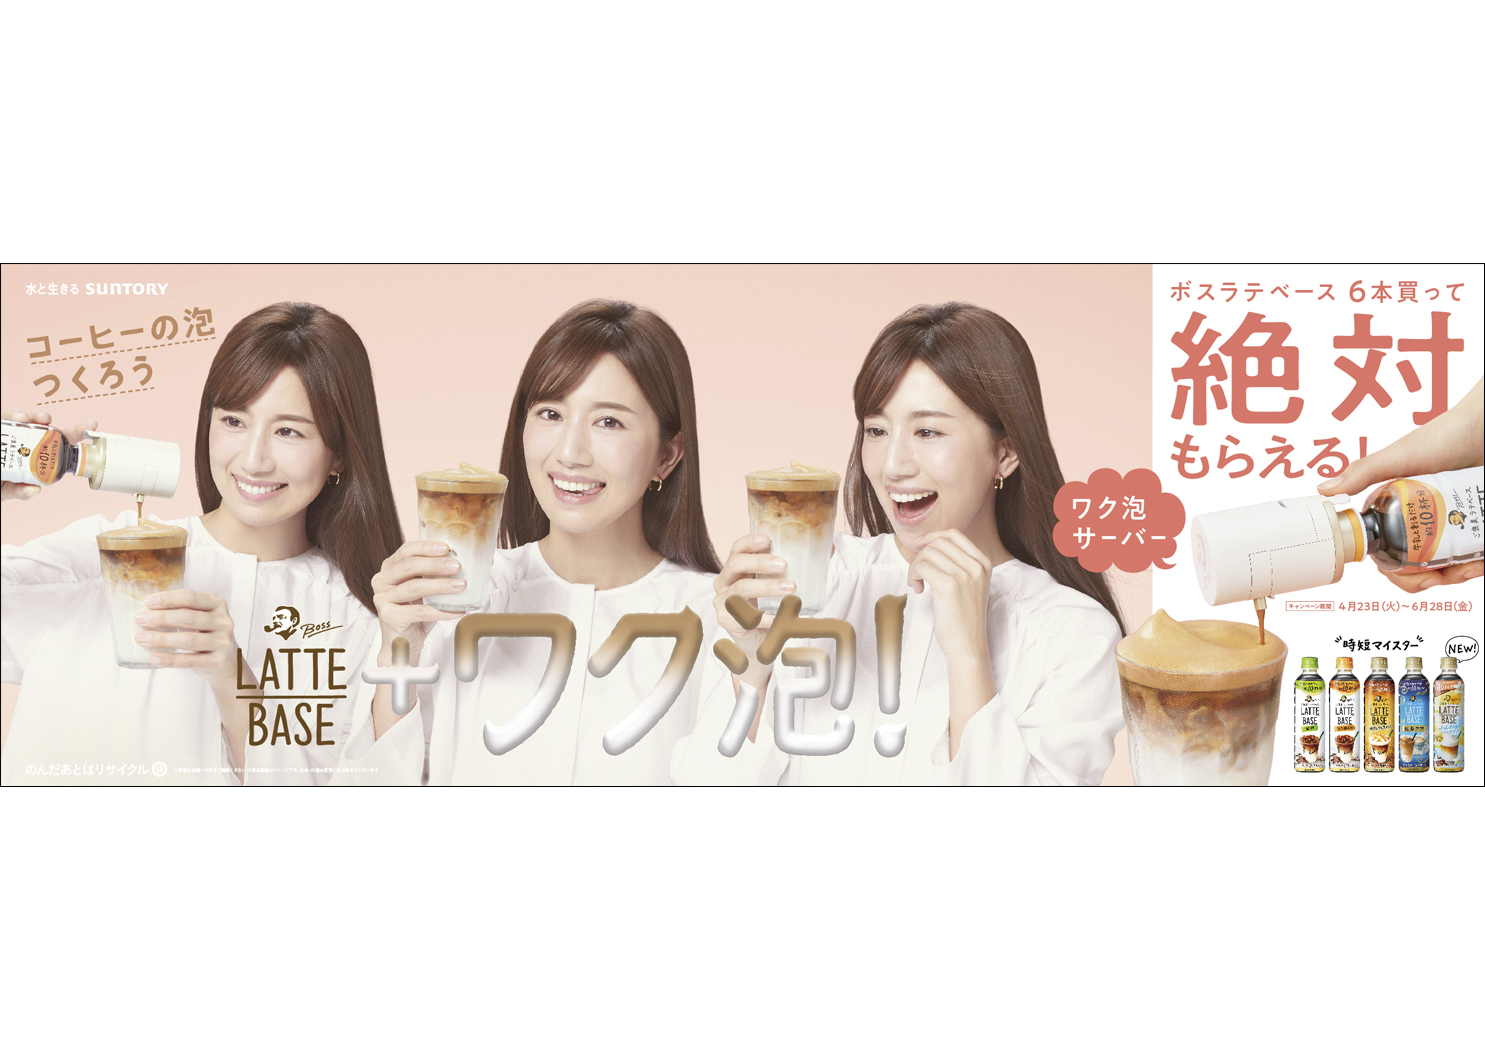 Suntory boss LatteBase wakuawa B2halfposter